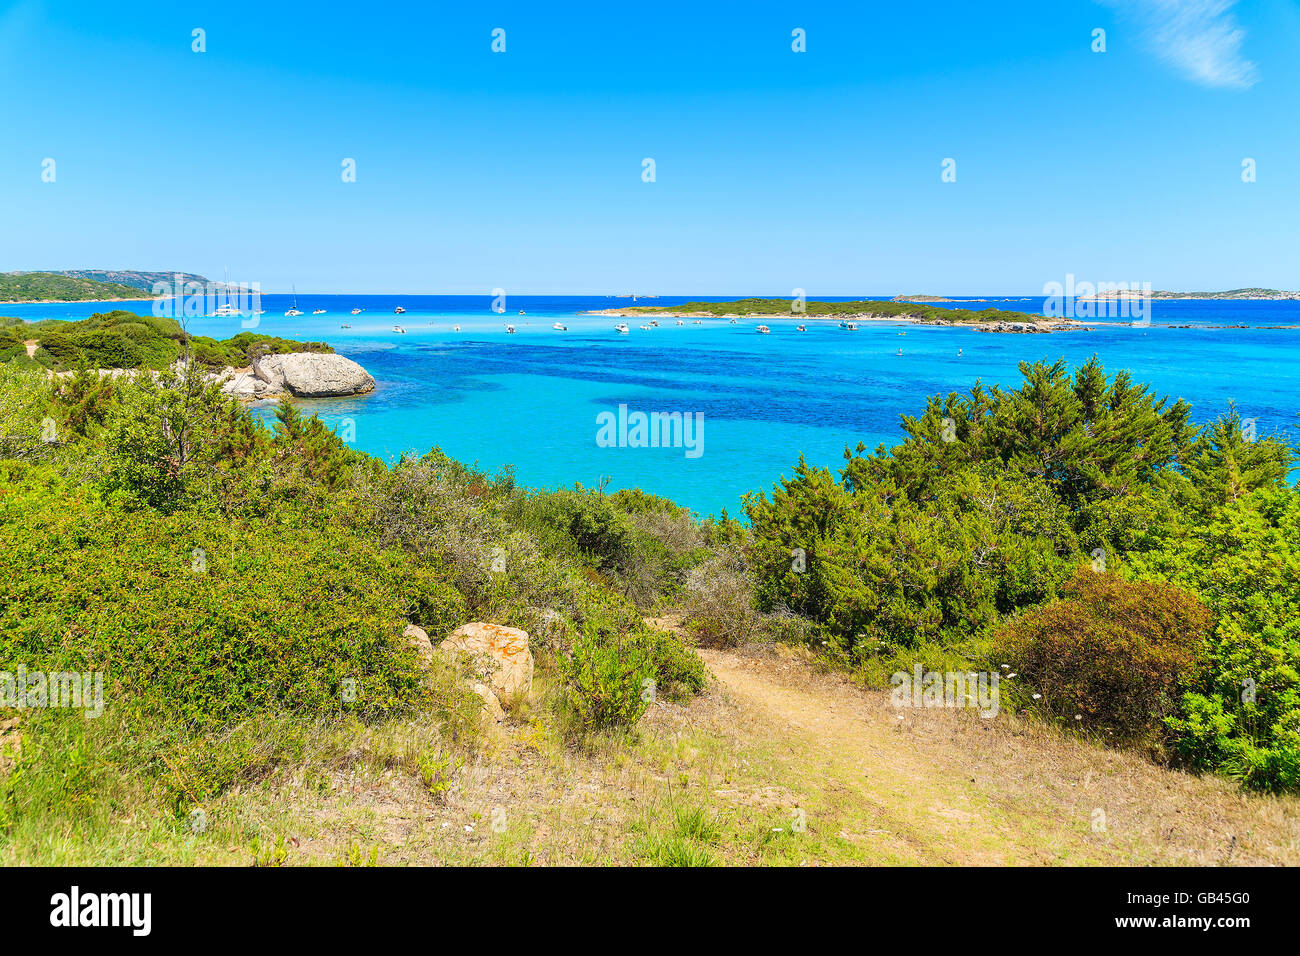 Chemin le long de la côte avec de l'eau de mer turquoise, près de Grande plage de Sperone, Corse, France Banque D'Images